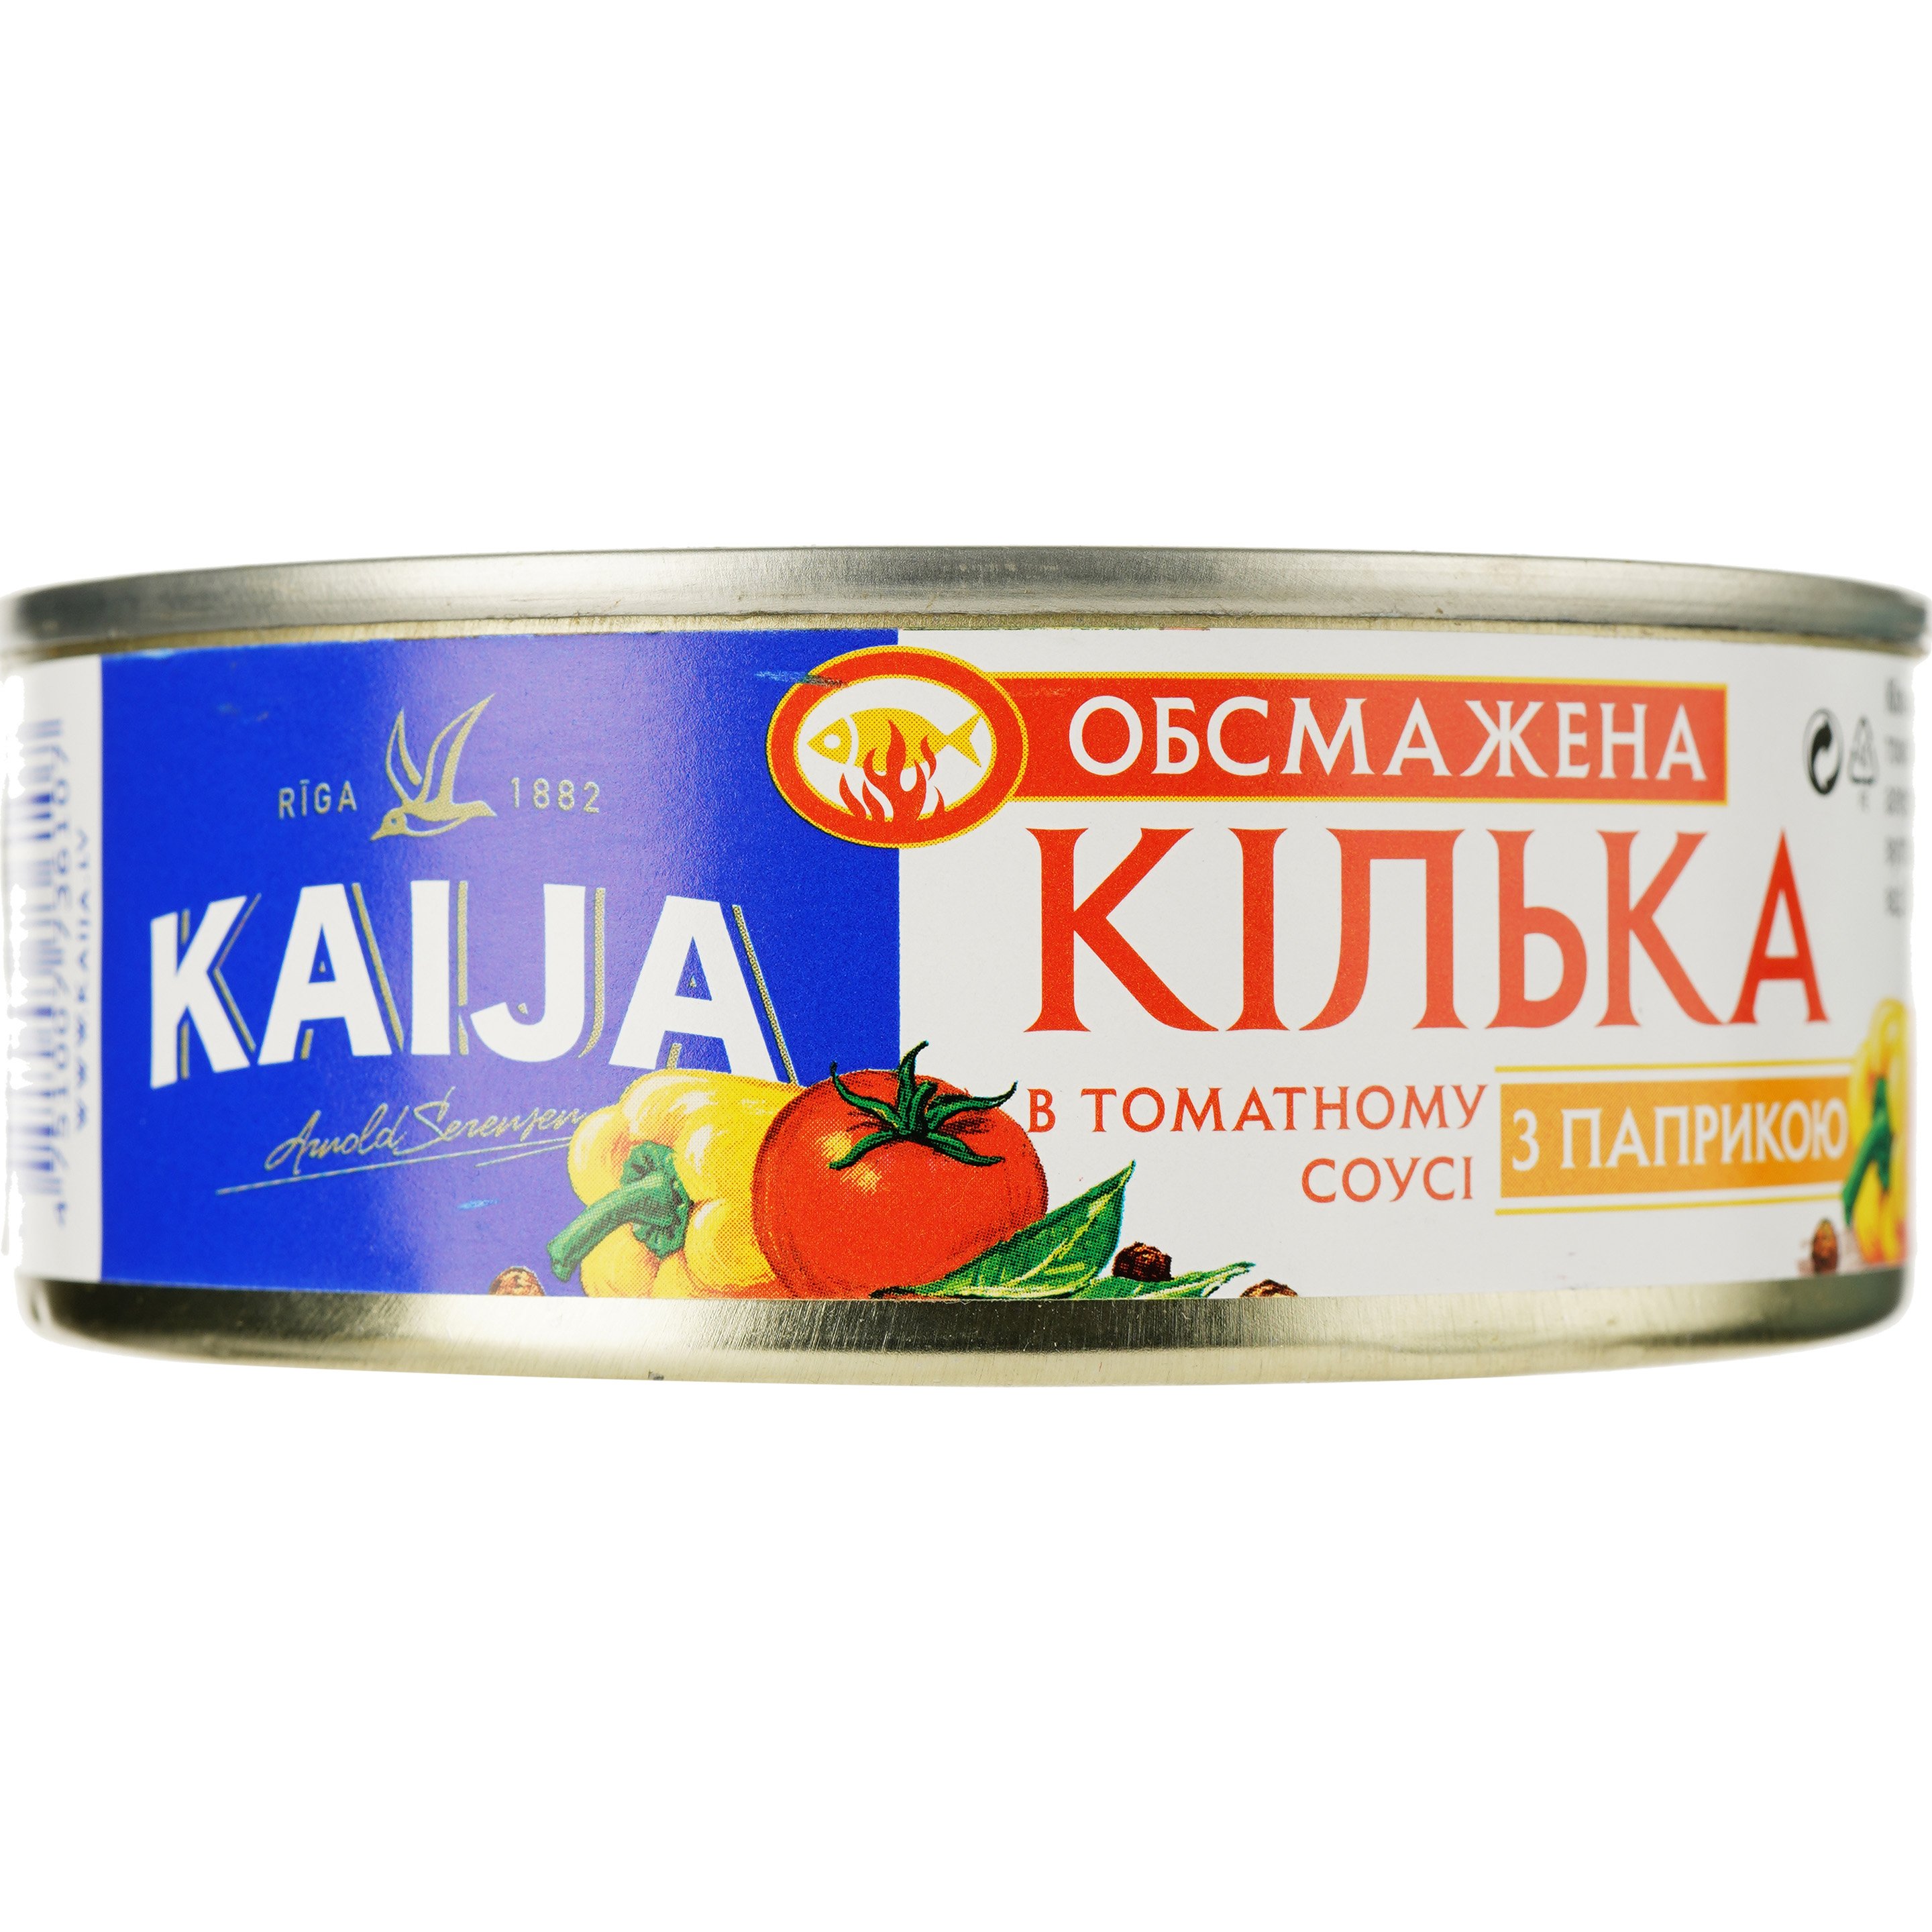 Килька Kaija обжаренная в томатном соусе с паприкой 240 г (879560) - фото 1